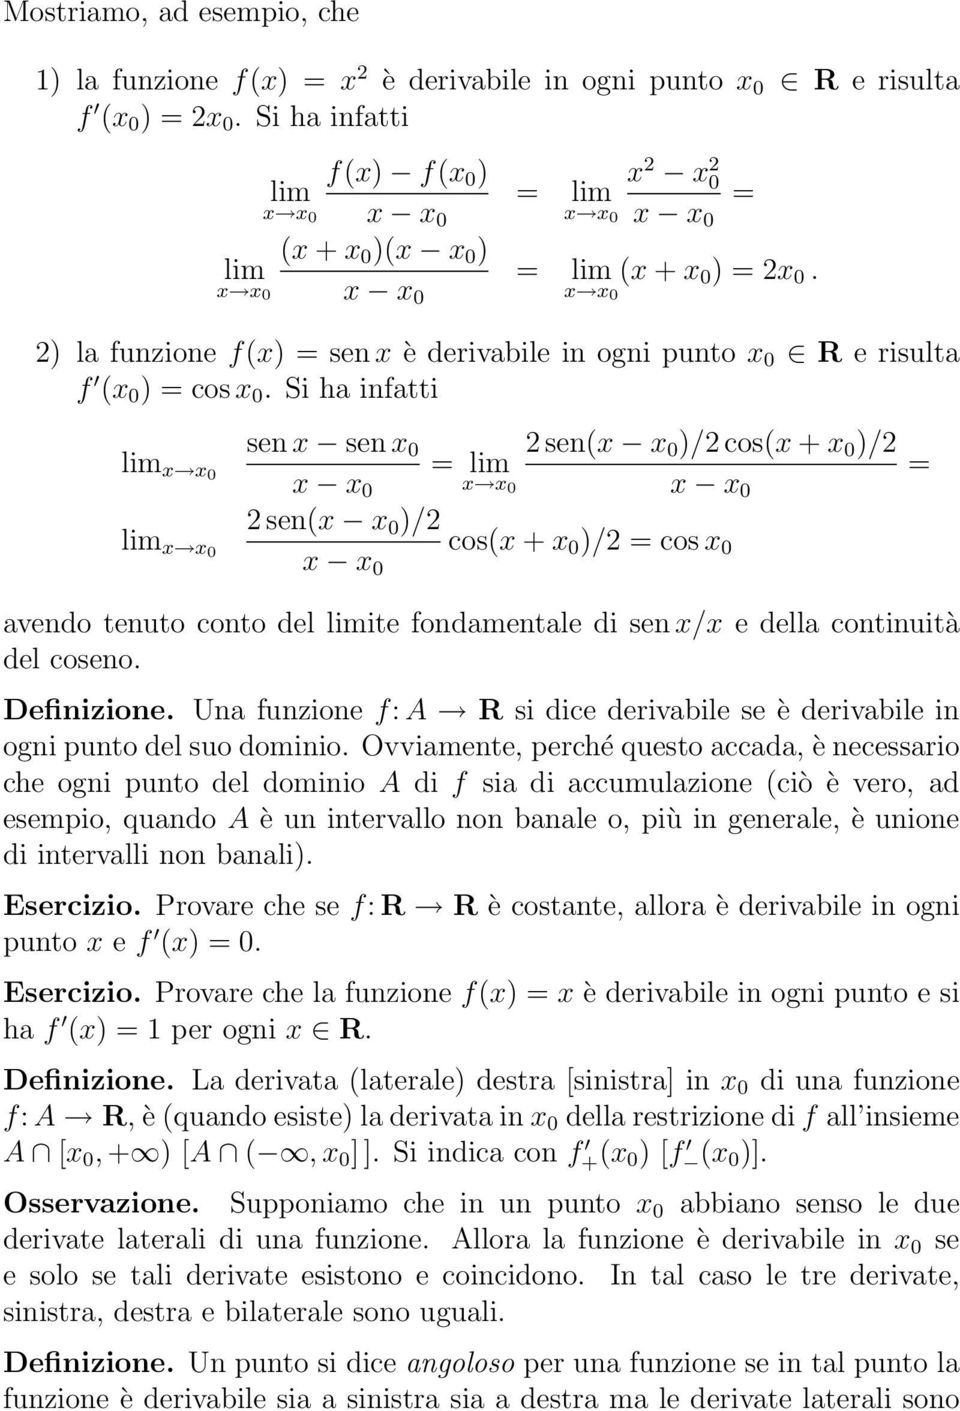 x x 0 x x 0 x x0 2) l funzione f(x) = sen x è derivbile in ogni punto x 0 R e risult f (x 0 ) = cos x 0.